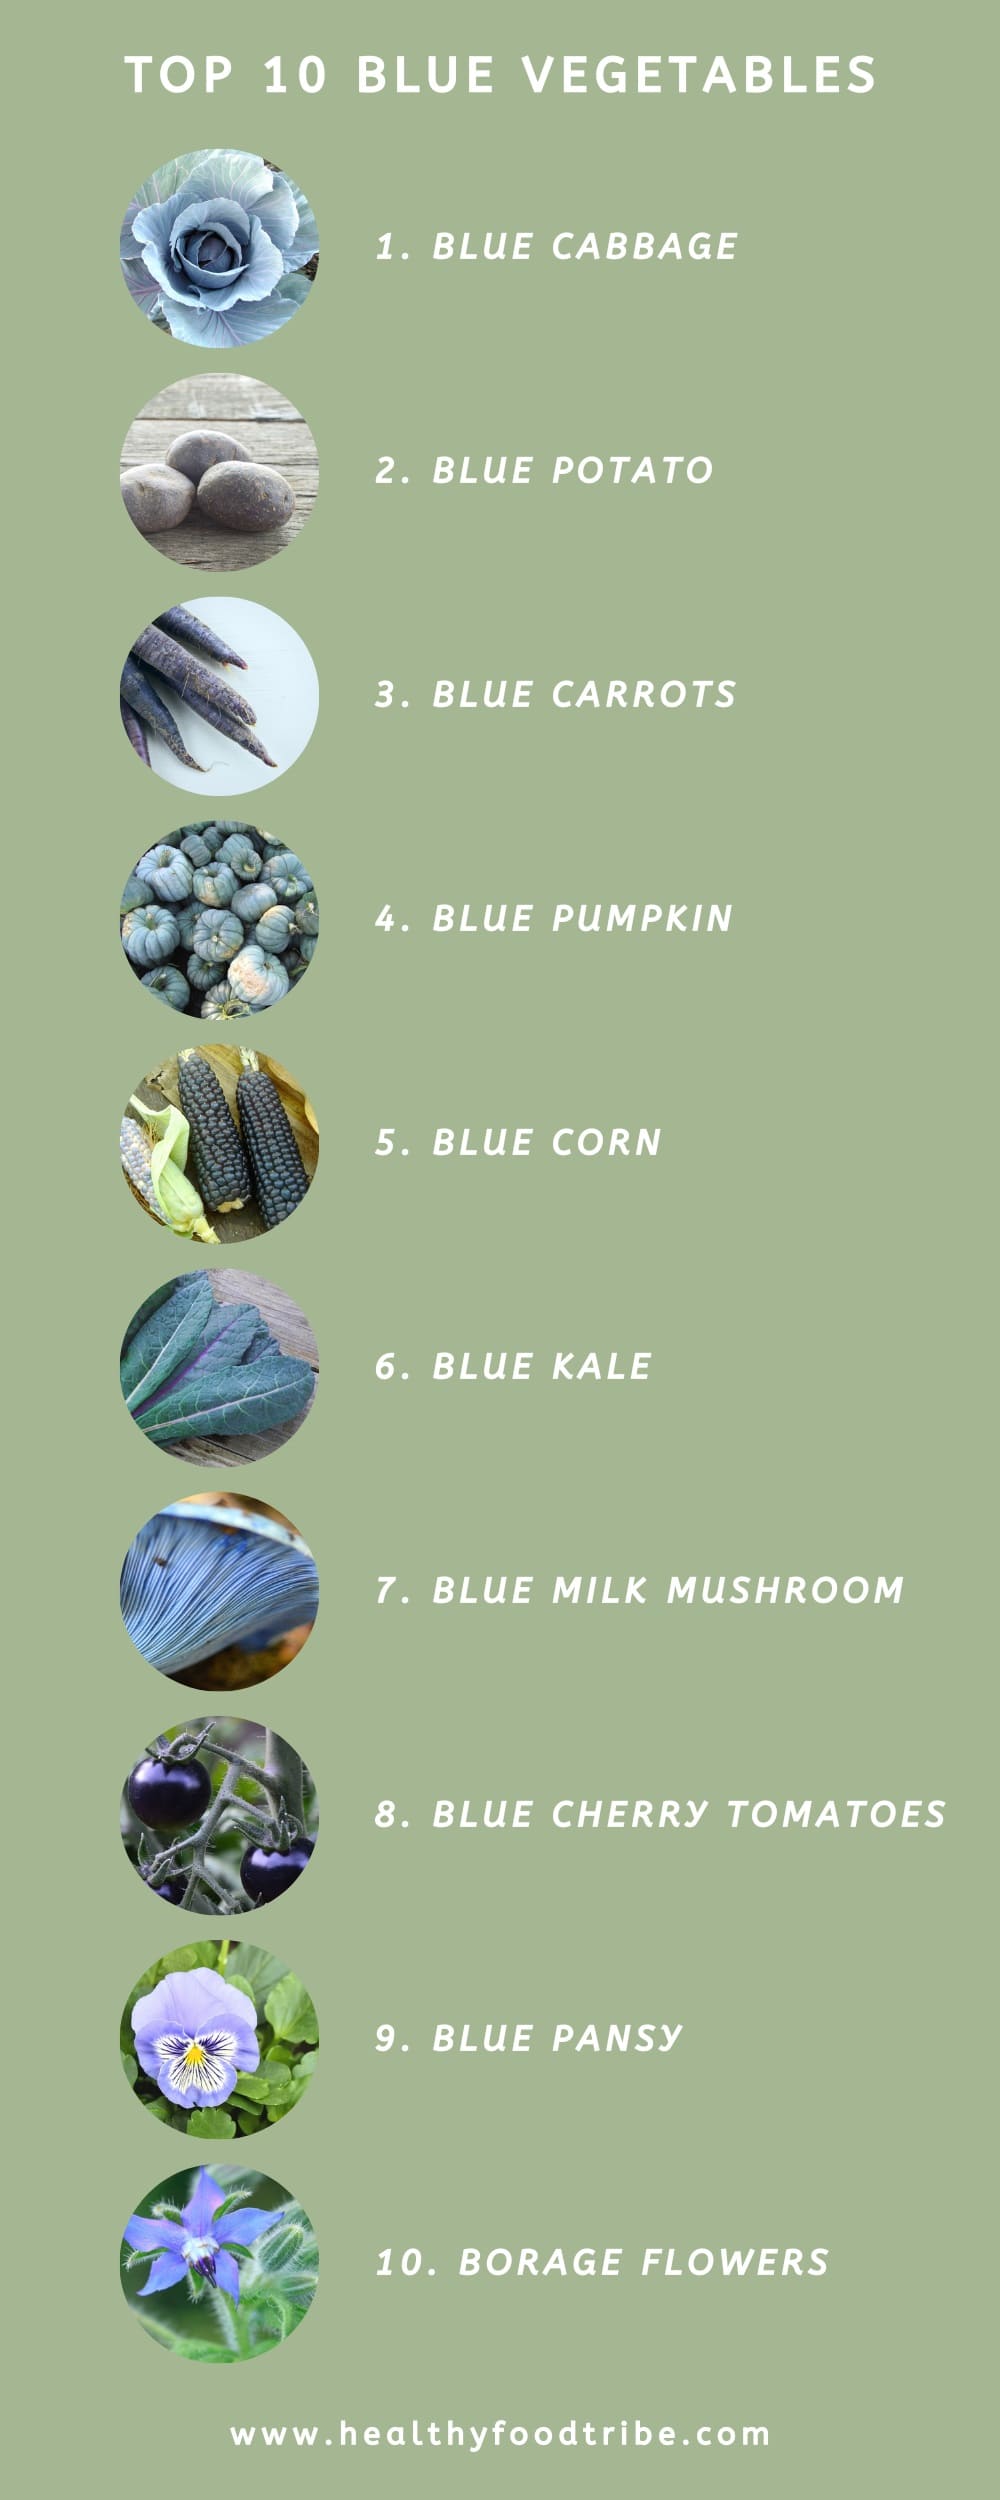 List of blue vegetables